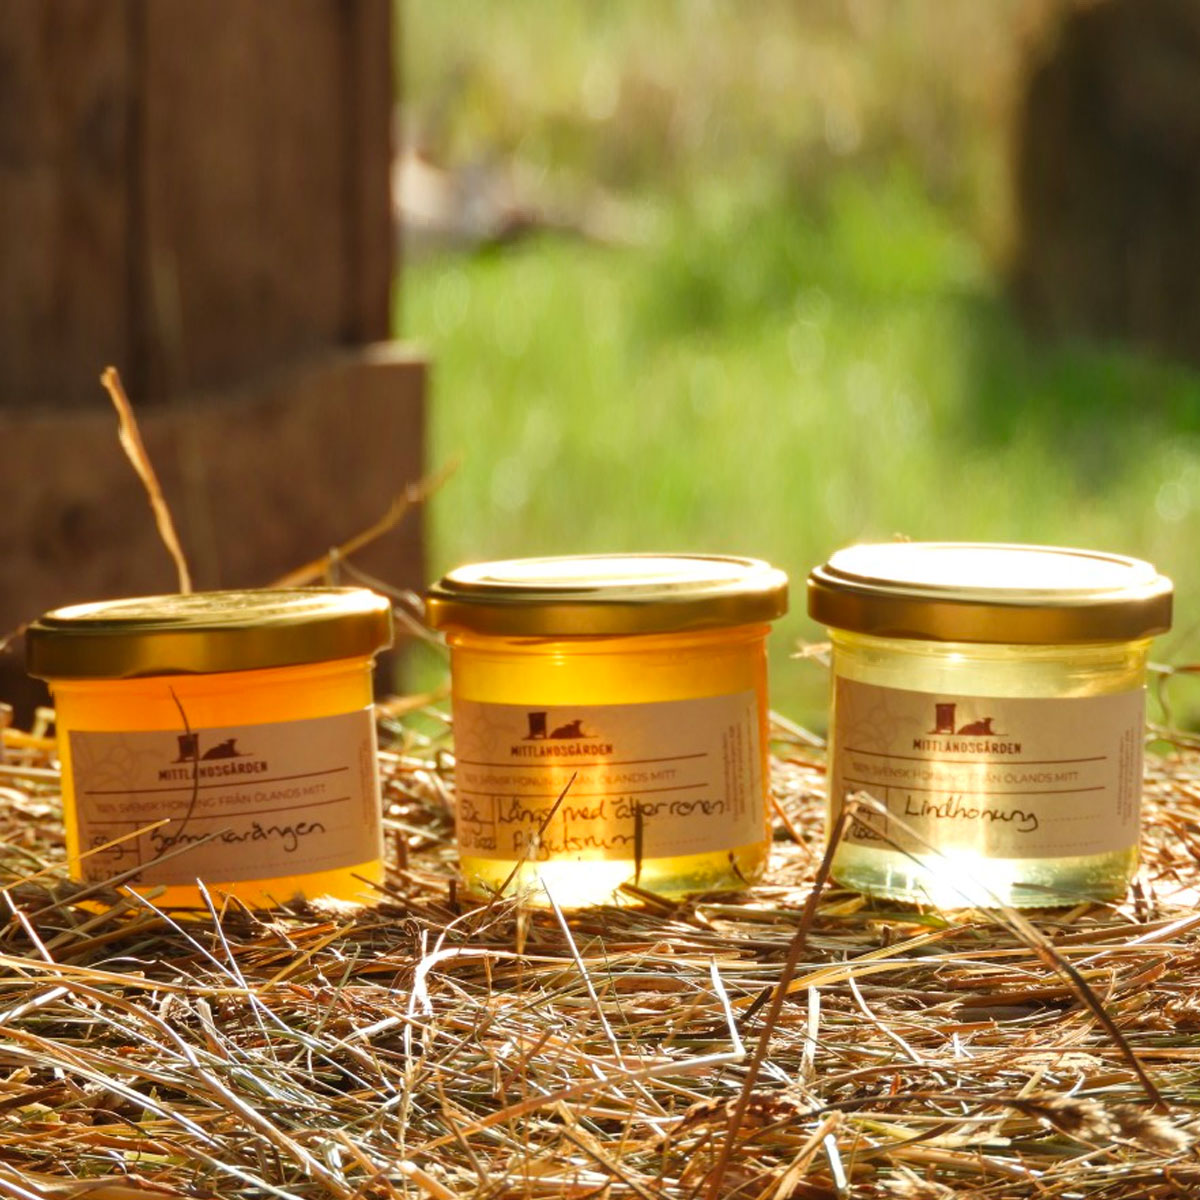 Vår unika guldglimrande honung med smak av sommar på Öland.